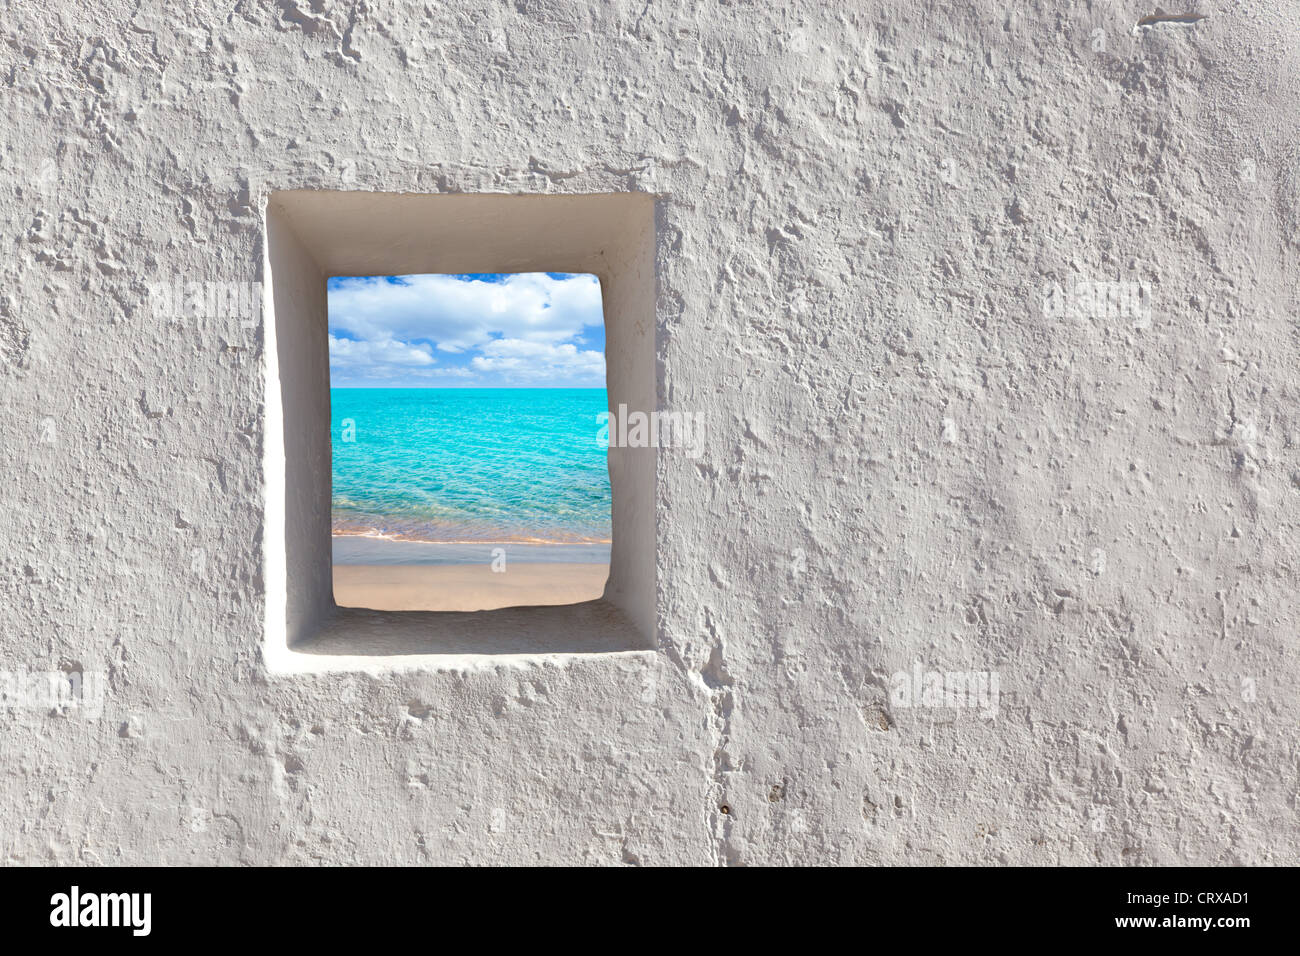 Îles Baléares turquoise idyllique plage vue à travers la porte ouverte de la chambre aux murs blanchis à la chaux Banque D'Images